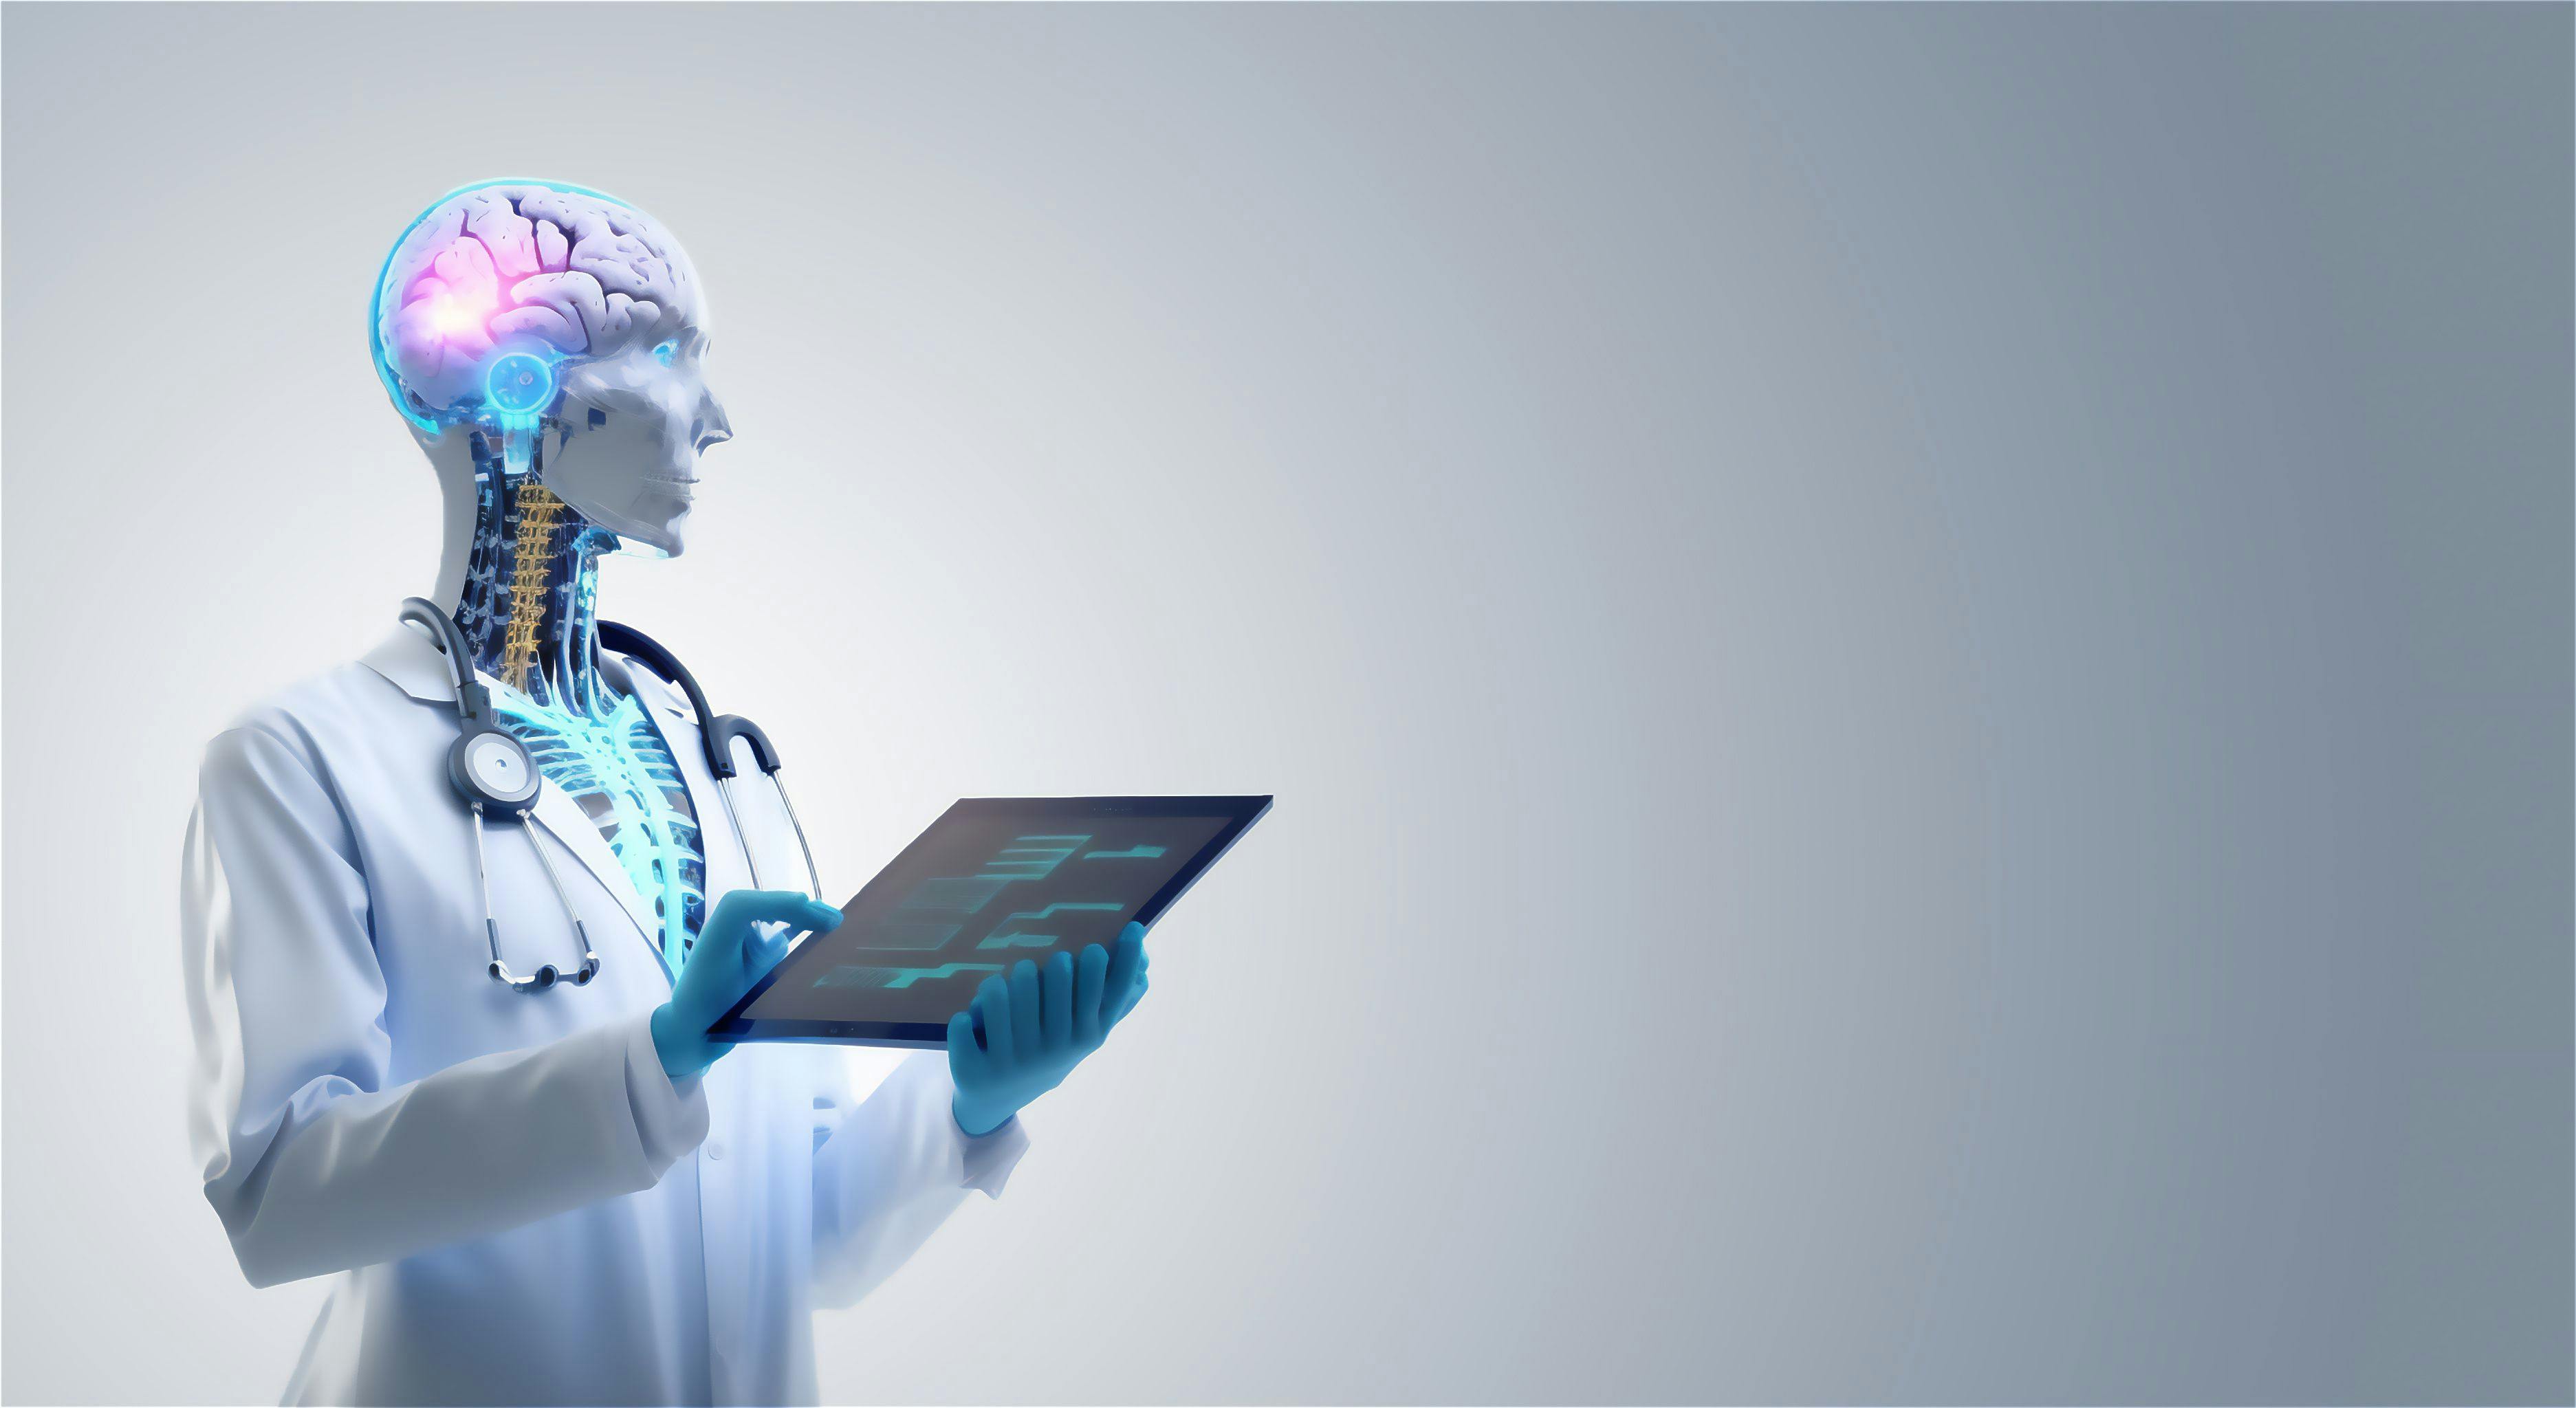 How AI will enhance health care: ©catalin - stock.adobe.com